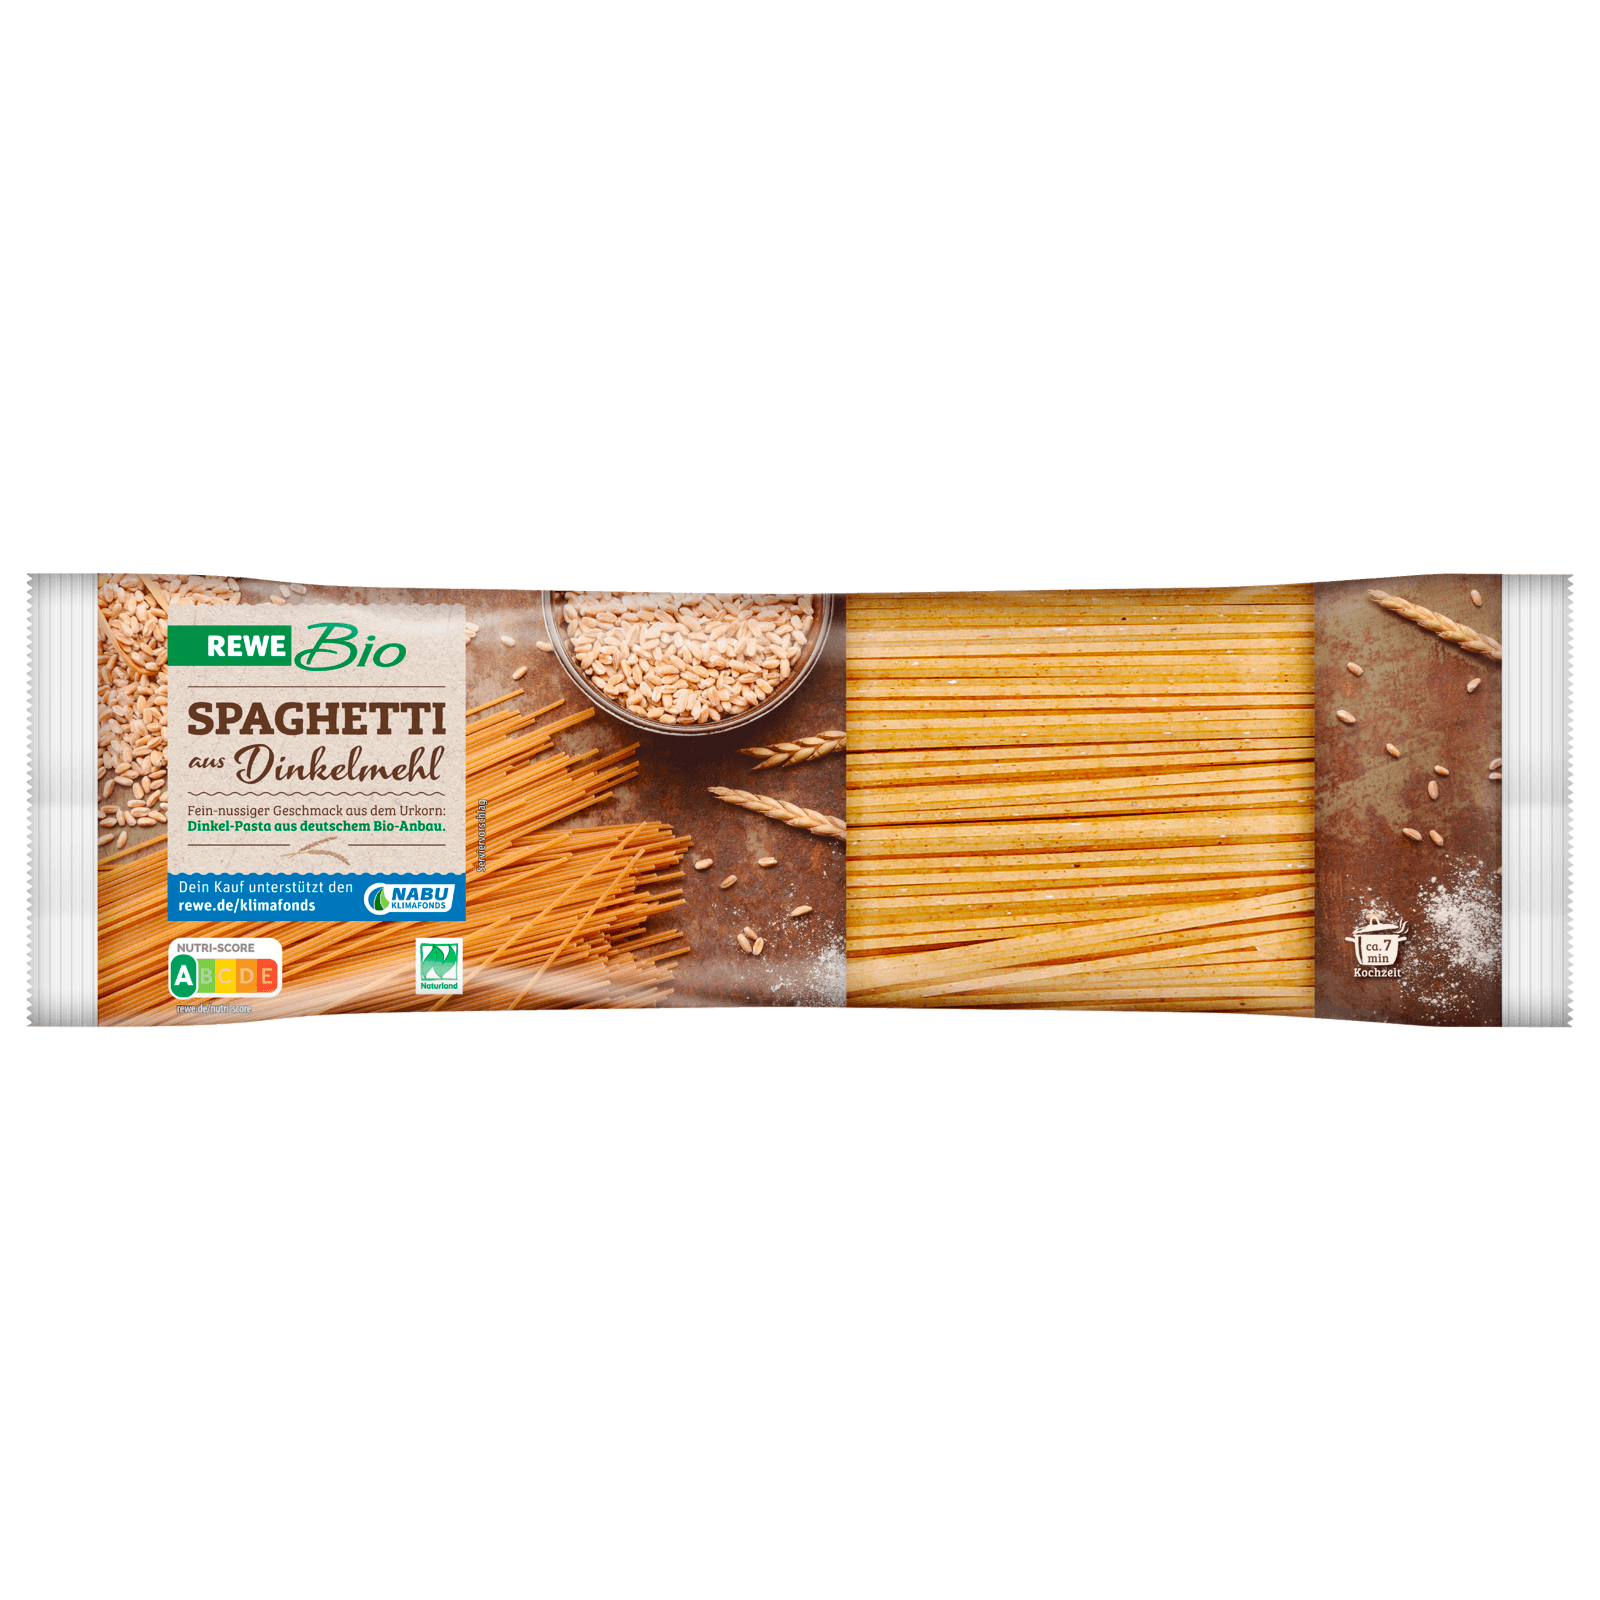 Rewe Bio Spaghetti Dinkel 500g Bei Rewe Online Bestellen